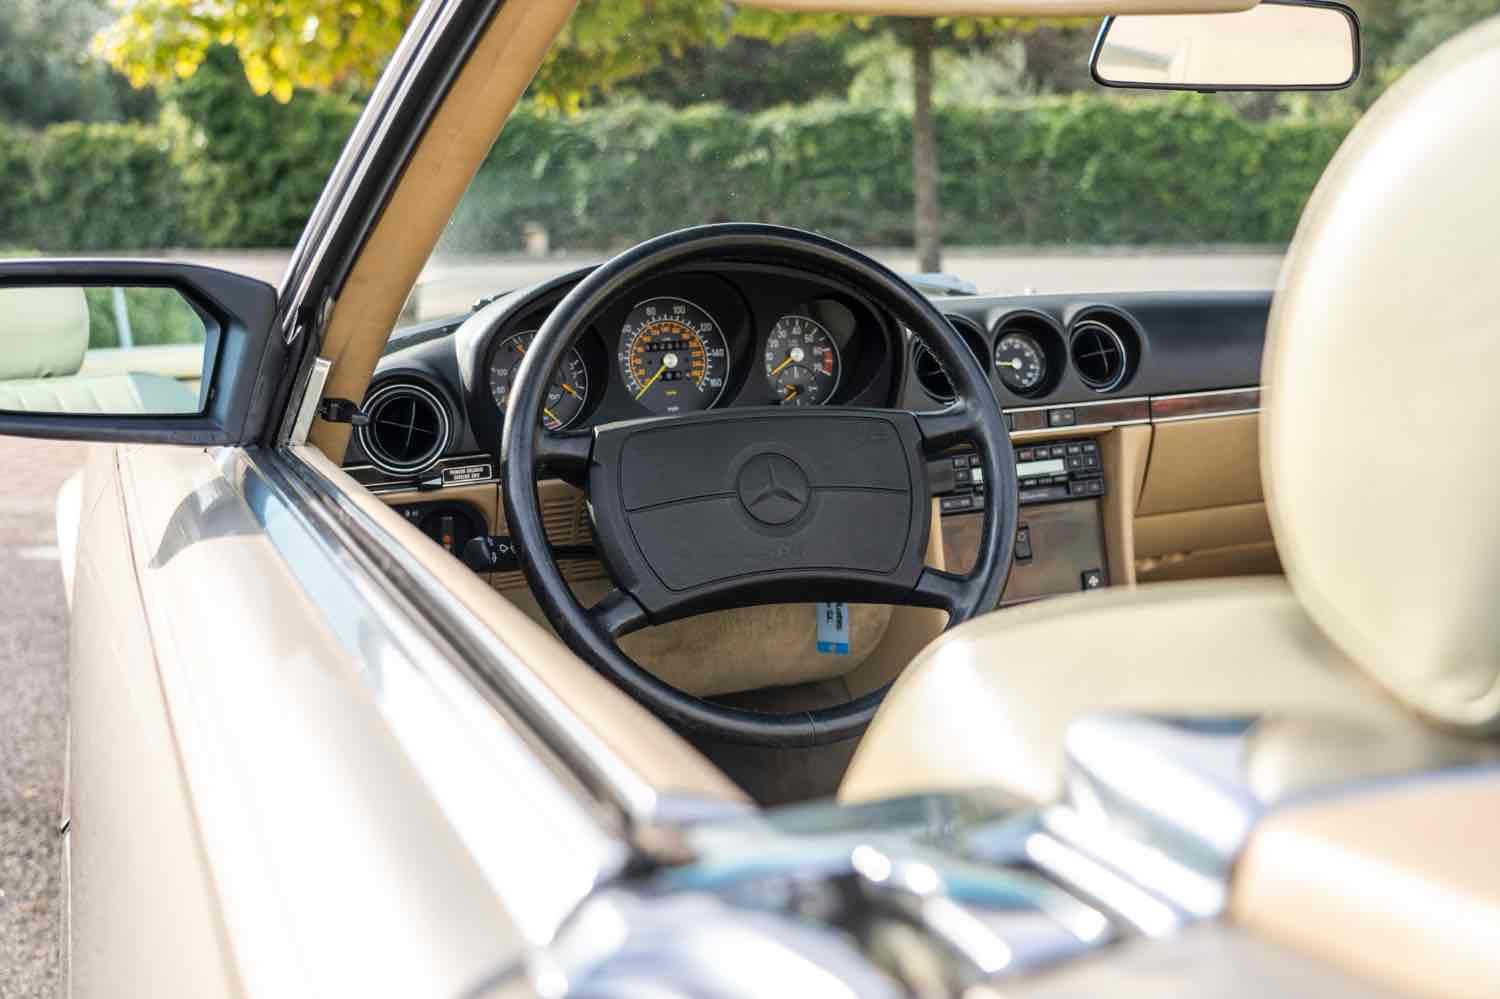 Mercedes-Benz - 560 SL - 1988